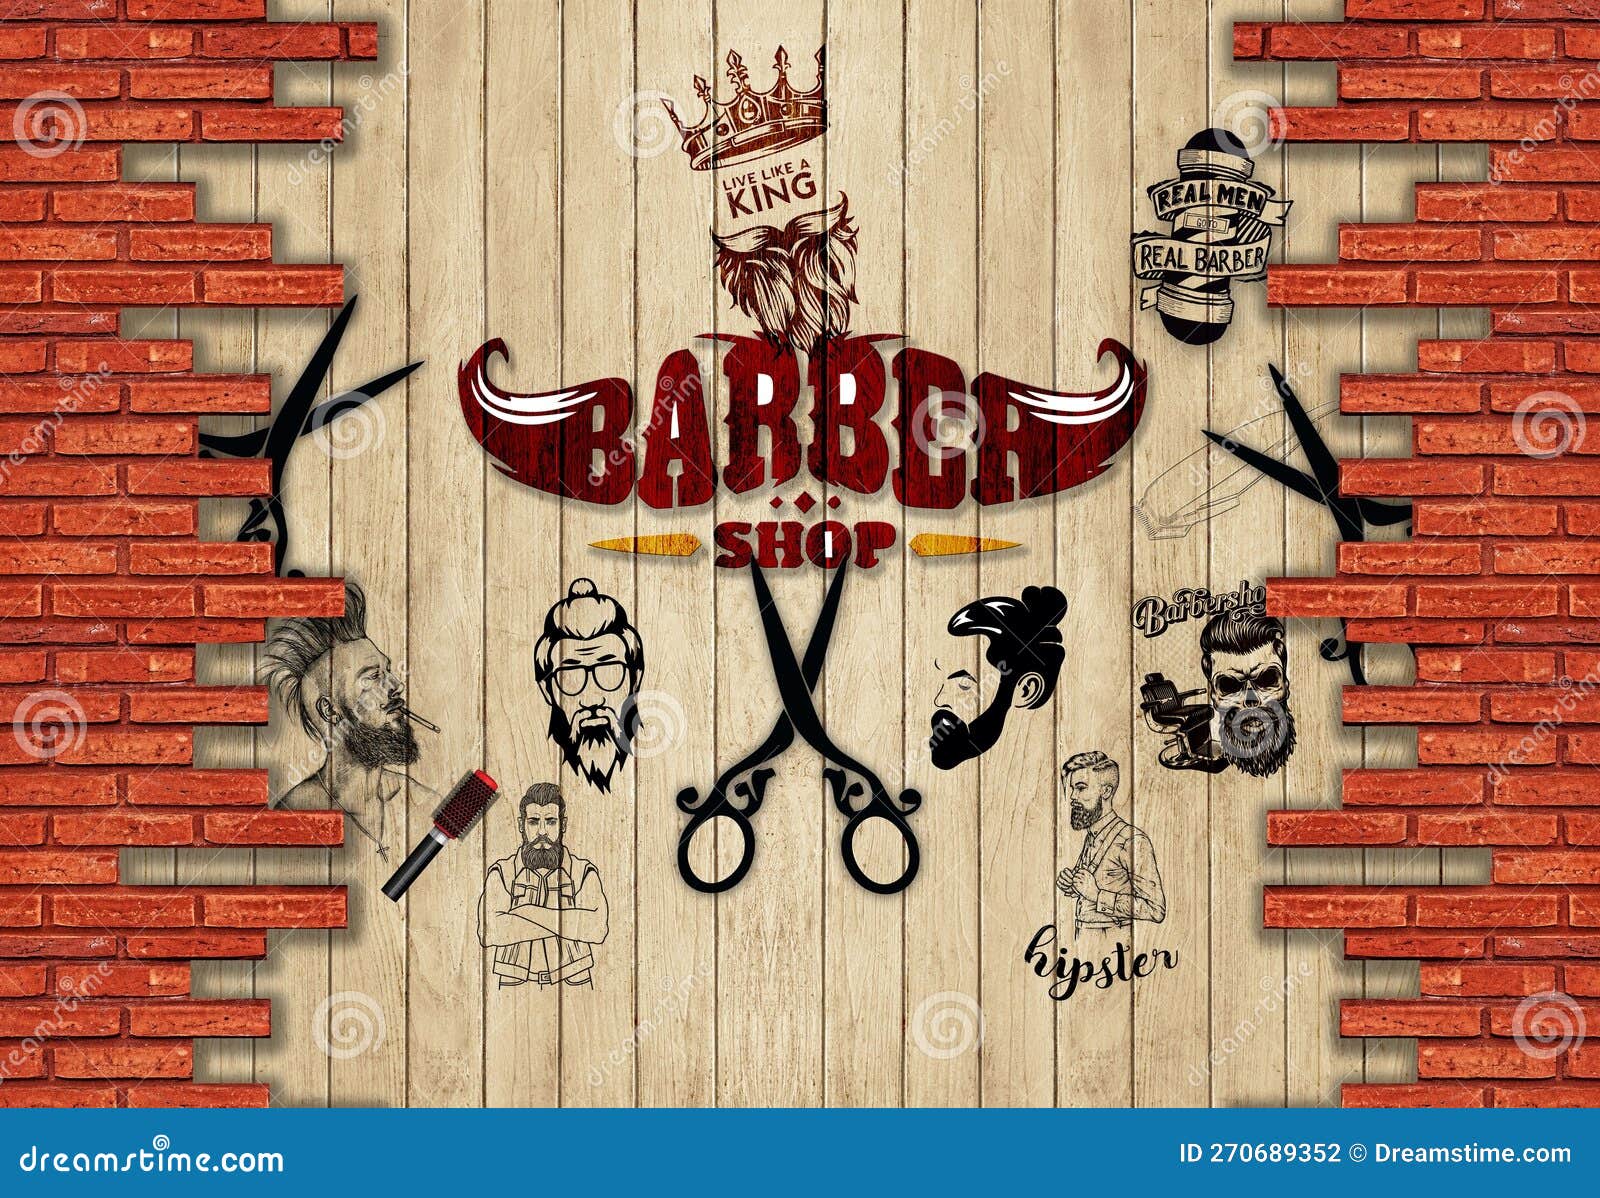 Barber Shop Background Images  Free Download on Freepik